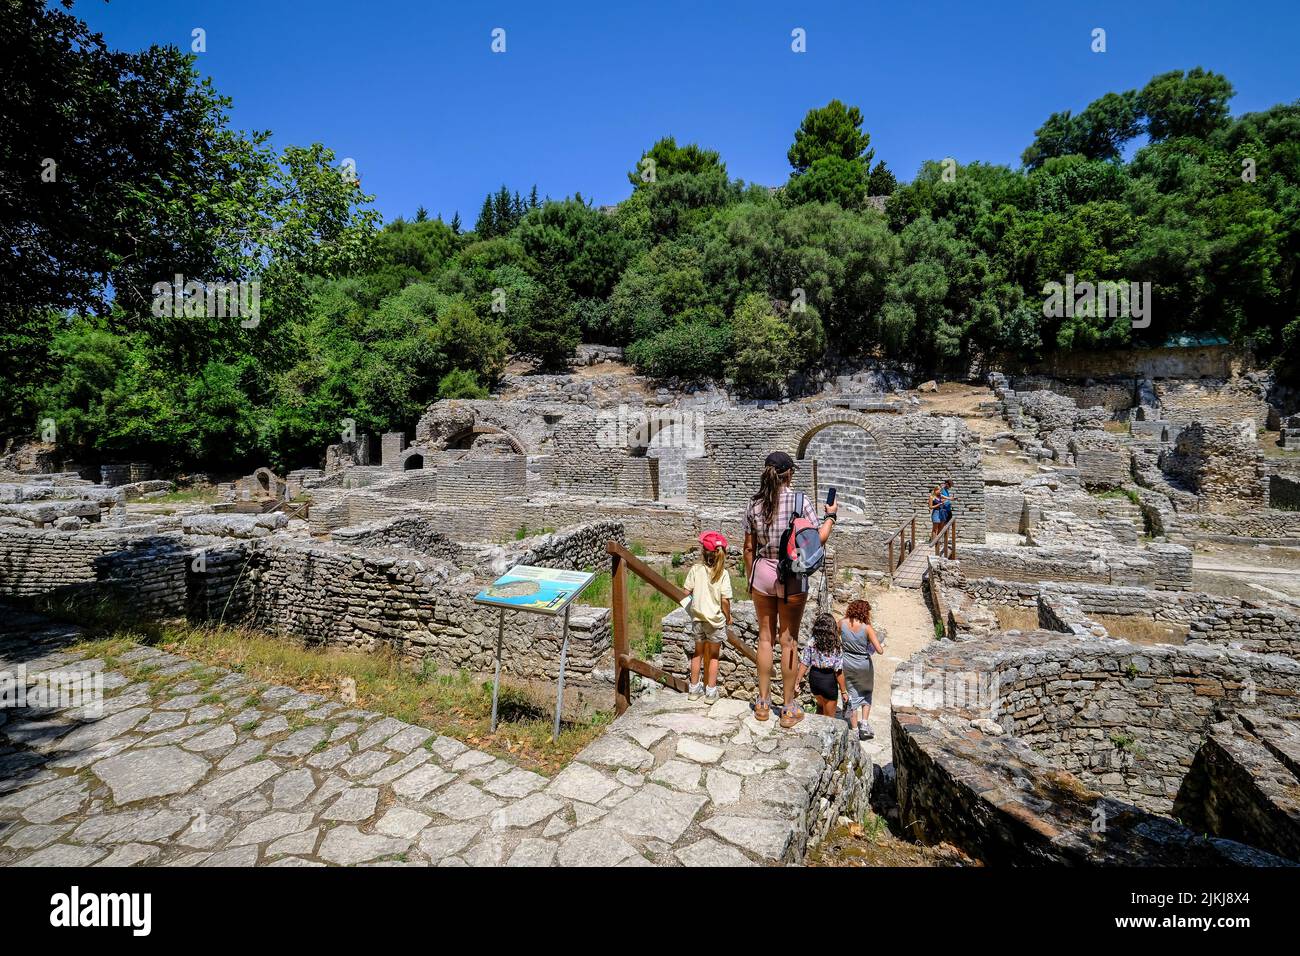 Butrint, Ksamil, Albania - Los turistas visitan el anfiteatro en la antigua Butrint, el Templo de Asclepius y el teatro, Patrimonio de la Humanidad la ciudad arruinada de Butrint. Foto de stock